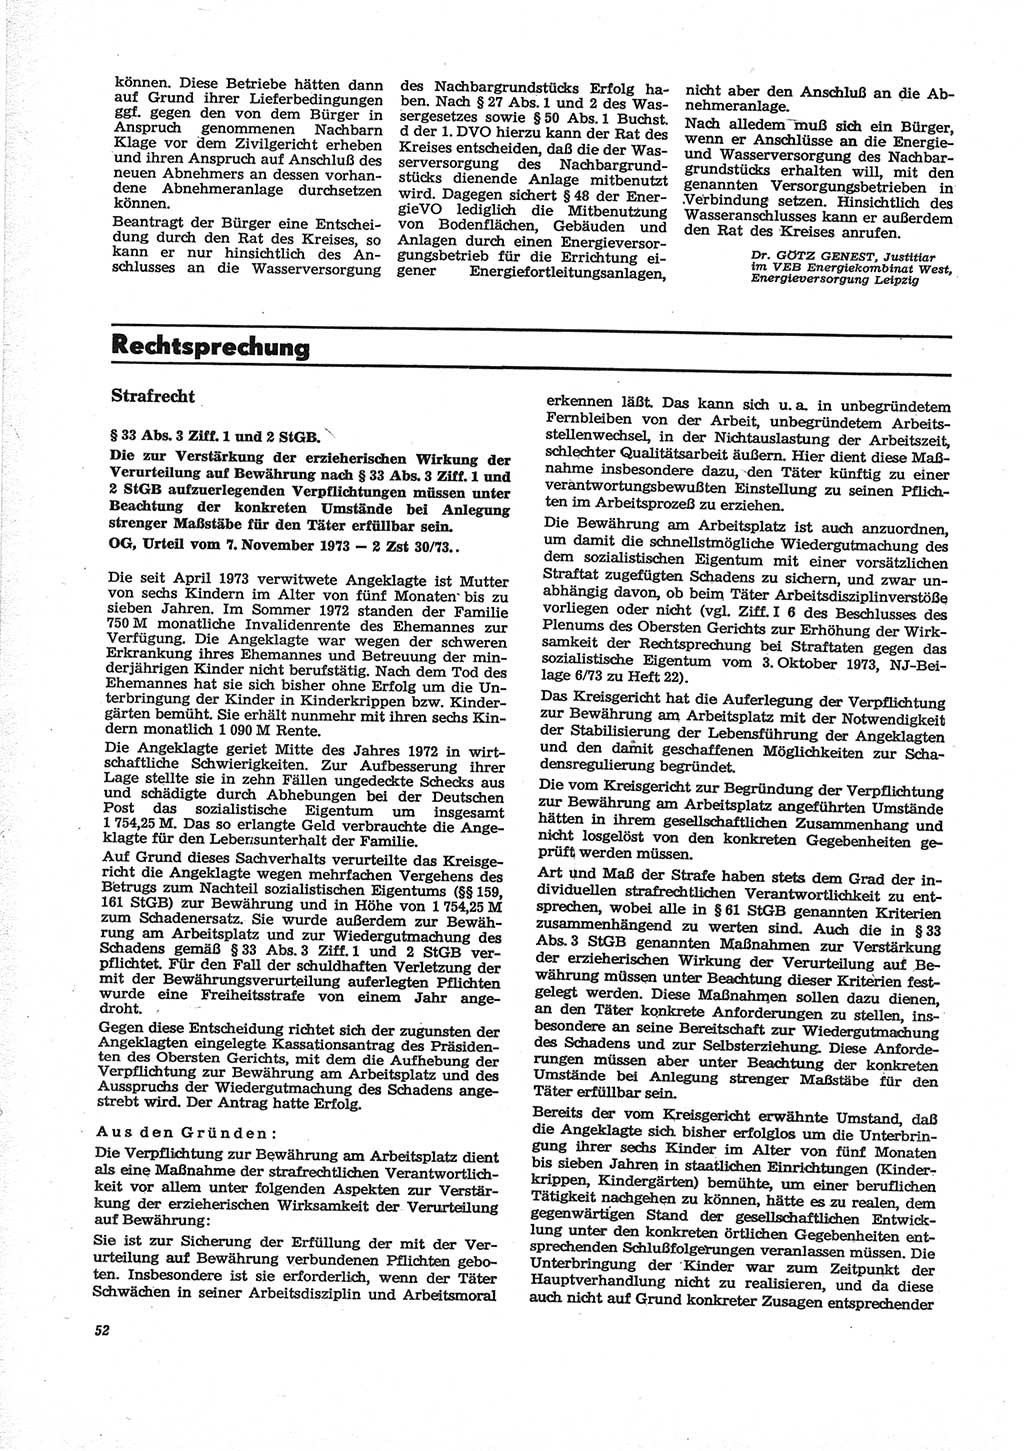 Neue Justiz (NJ), Zeitschrift für Recht und Rechtswissenschaft [Deutsche Demokratische Republik (DDR)], 28. Jahrgang 1974, Seite 52 (NJ DDR 1974, S. 52)